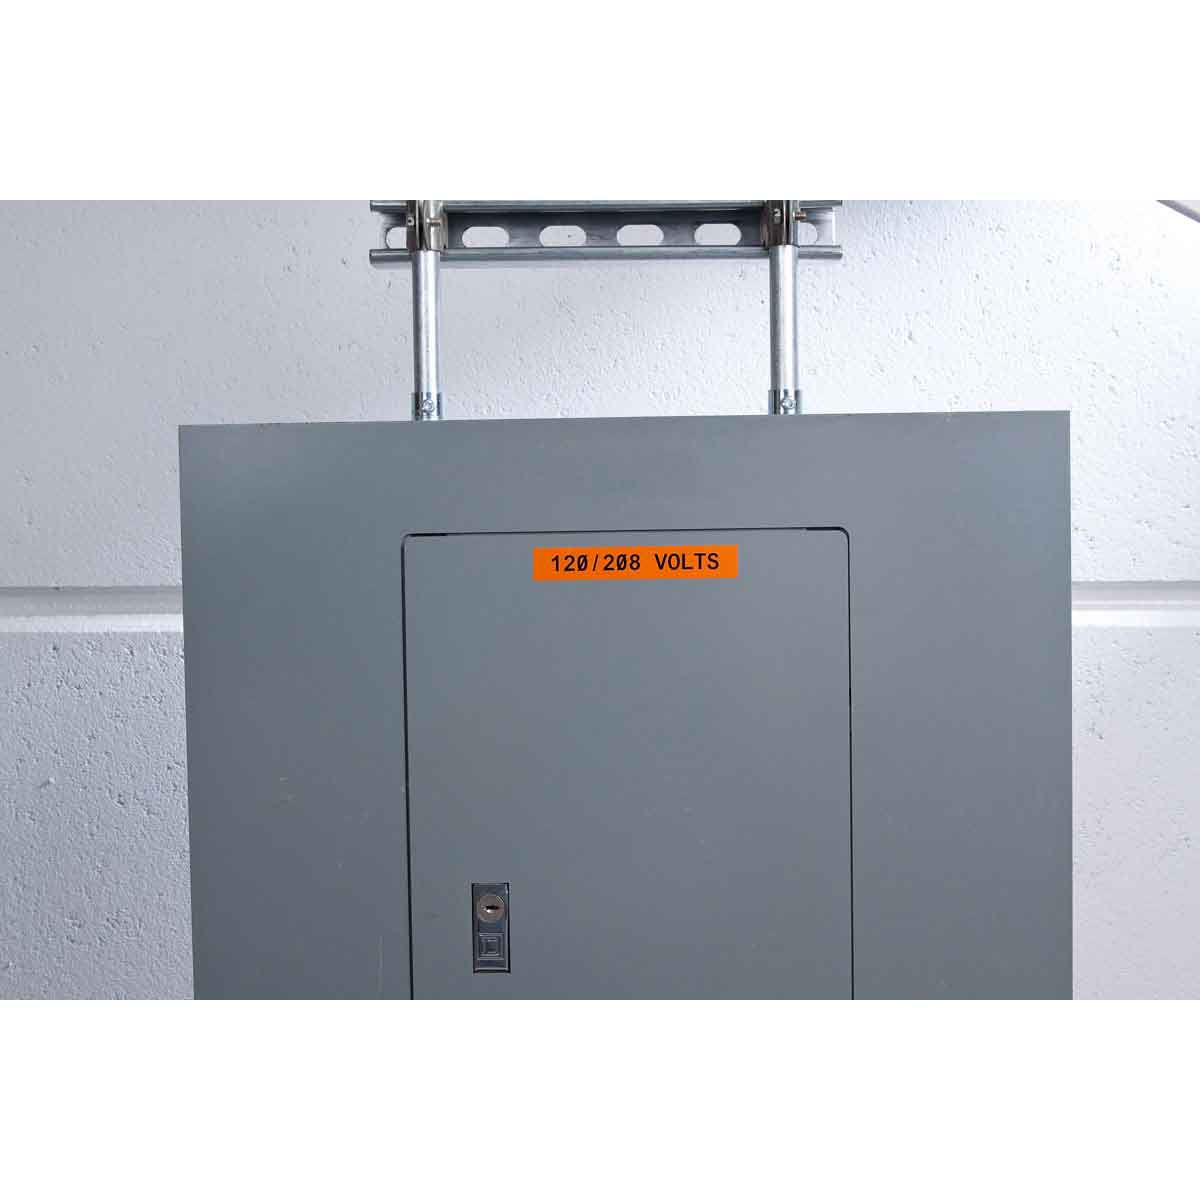 Оранжевый винил для маркировки внутри/снаружи помещения B30C-500-595-OR, 12,7 мм * 30,48 м (BBP31/33/35/37) - 4